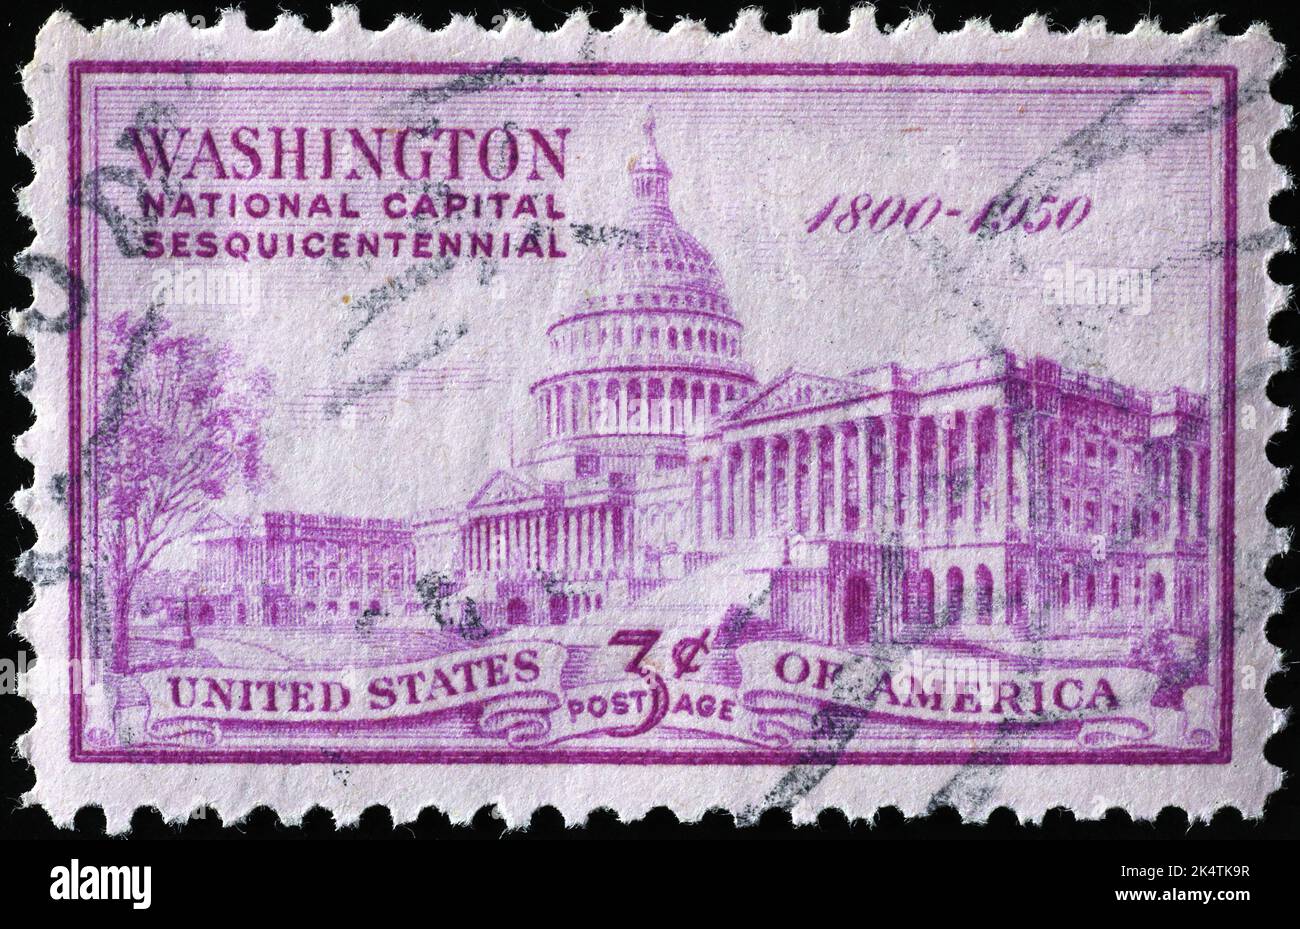 Die Hauptstadt von Washington wird auf einer alten amerikanischen Briefmarke gefeiert Stockfoto